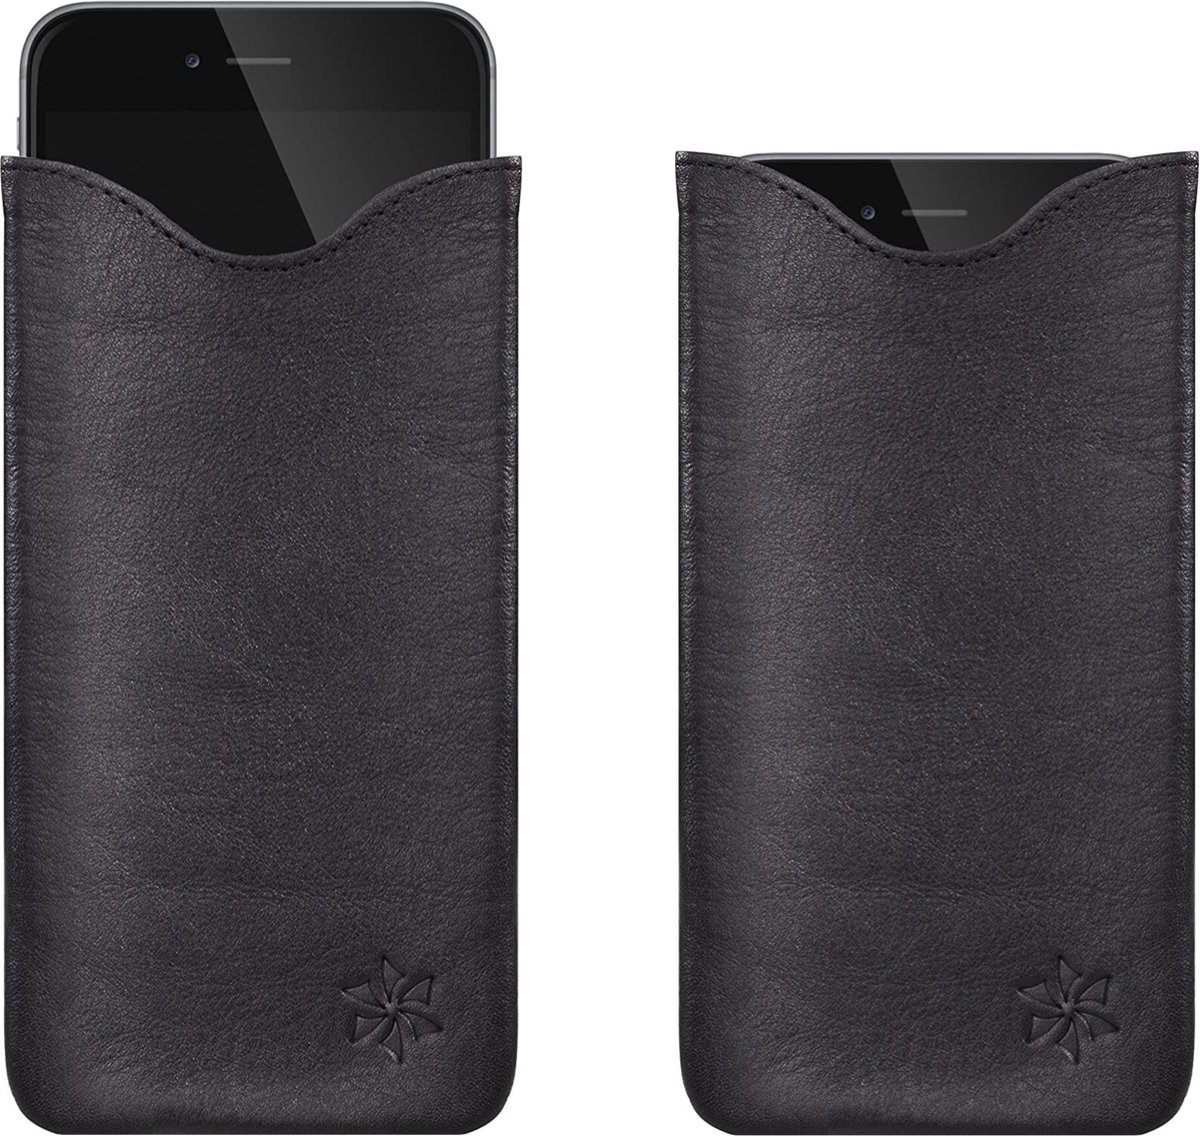 honju FIT Leer insteekhoes voor Apple iPhone 7, iPhone 8, iPhone SE (2022/2021/2020) - Zwart (Genuine Leather)